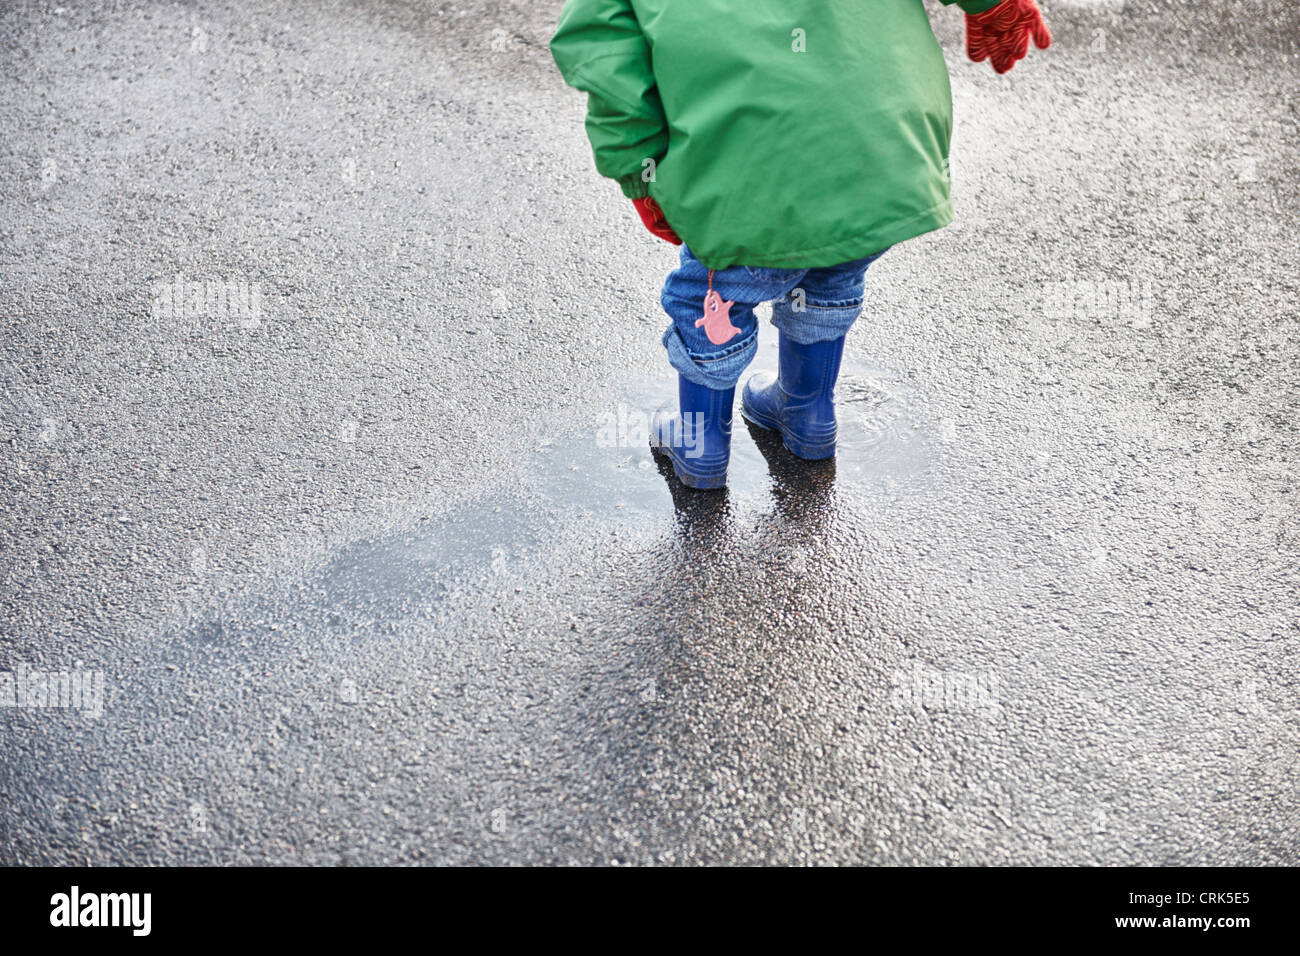 Junge im Regen Stiefel spielen in Pfütze Stockfoto